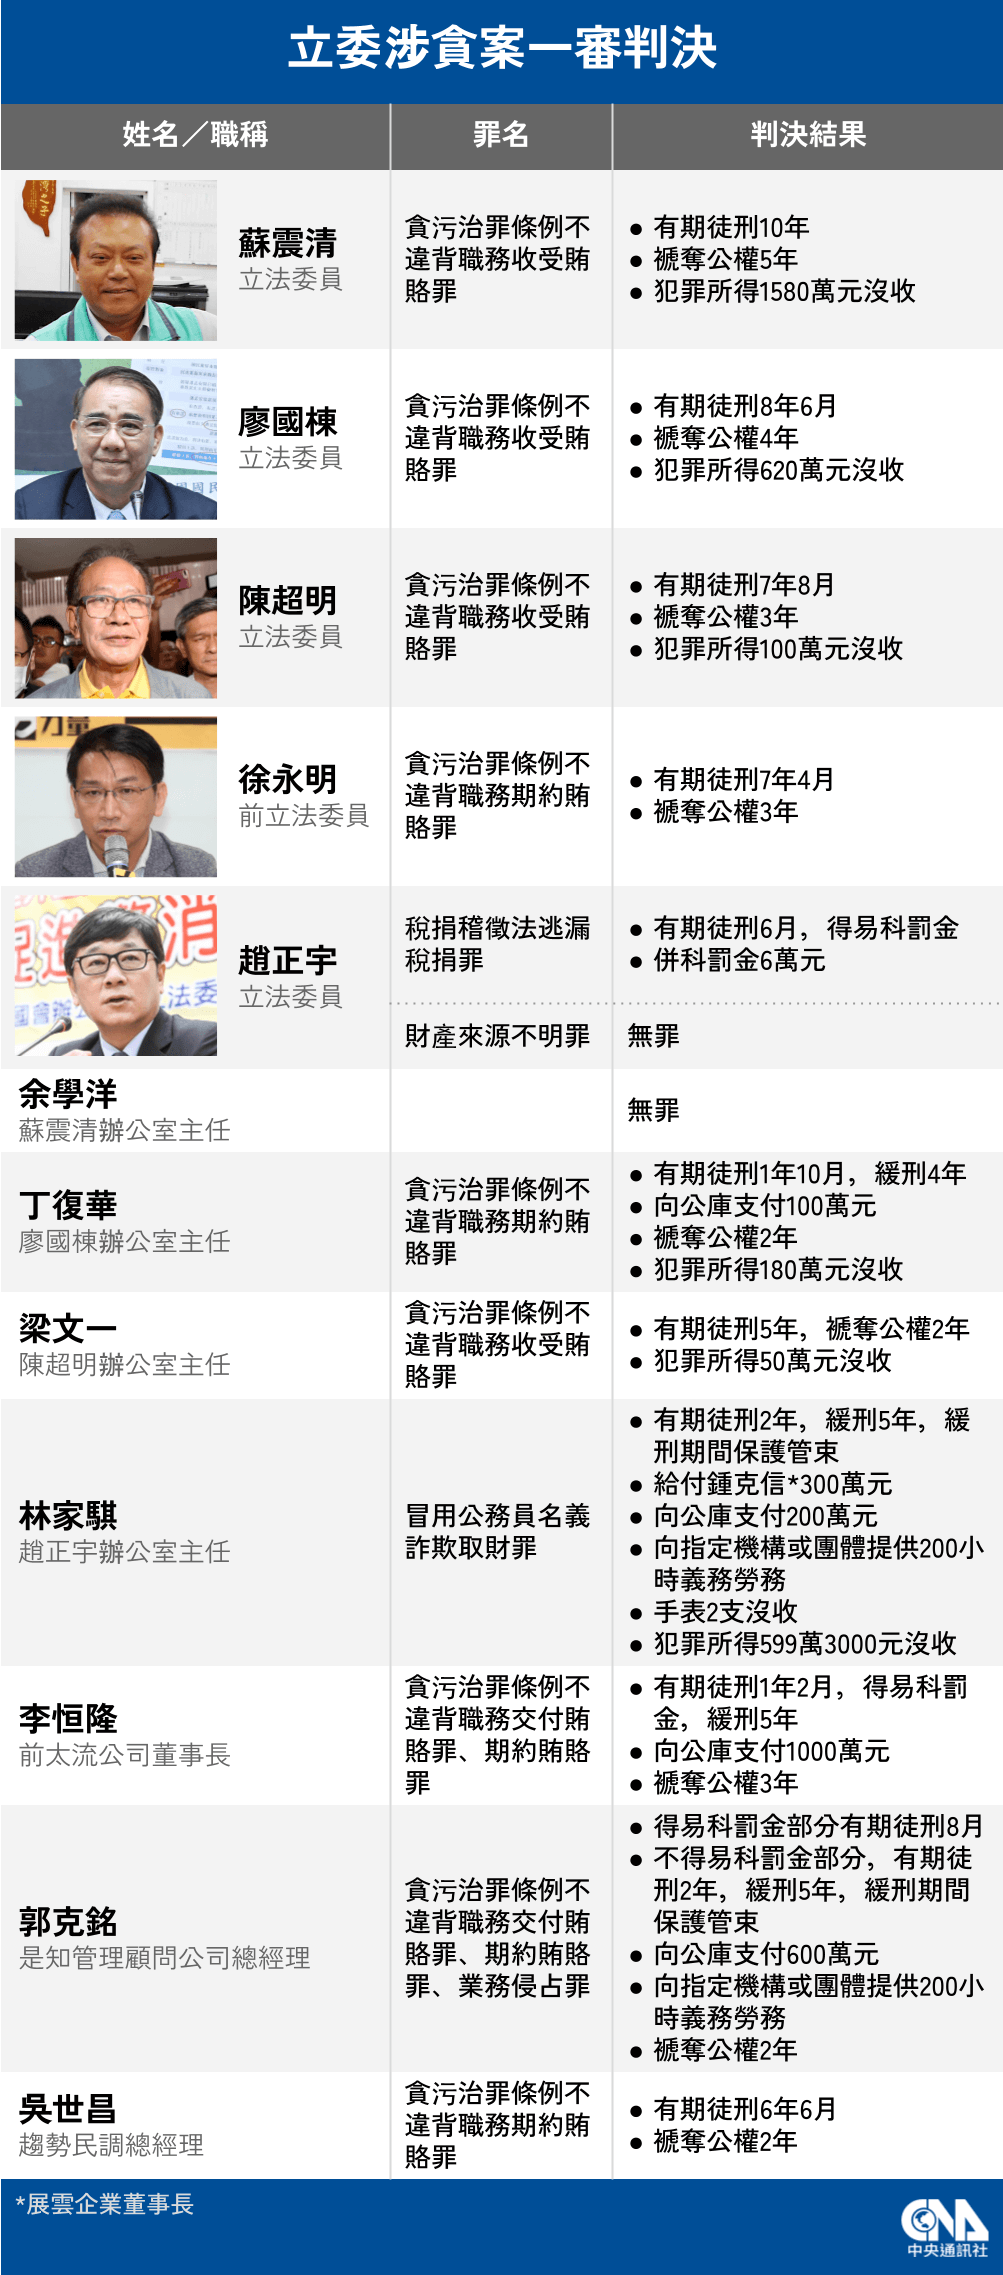 政治獻金收錢-陳超明- 貪污重判7年8月、趙正宇逃稅判6月